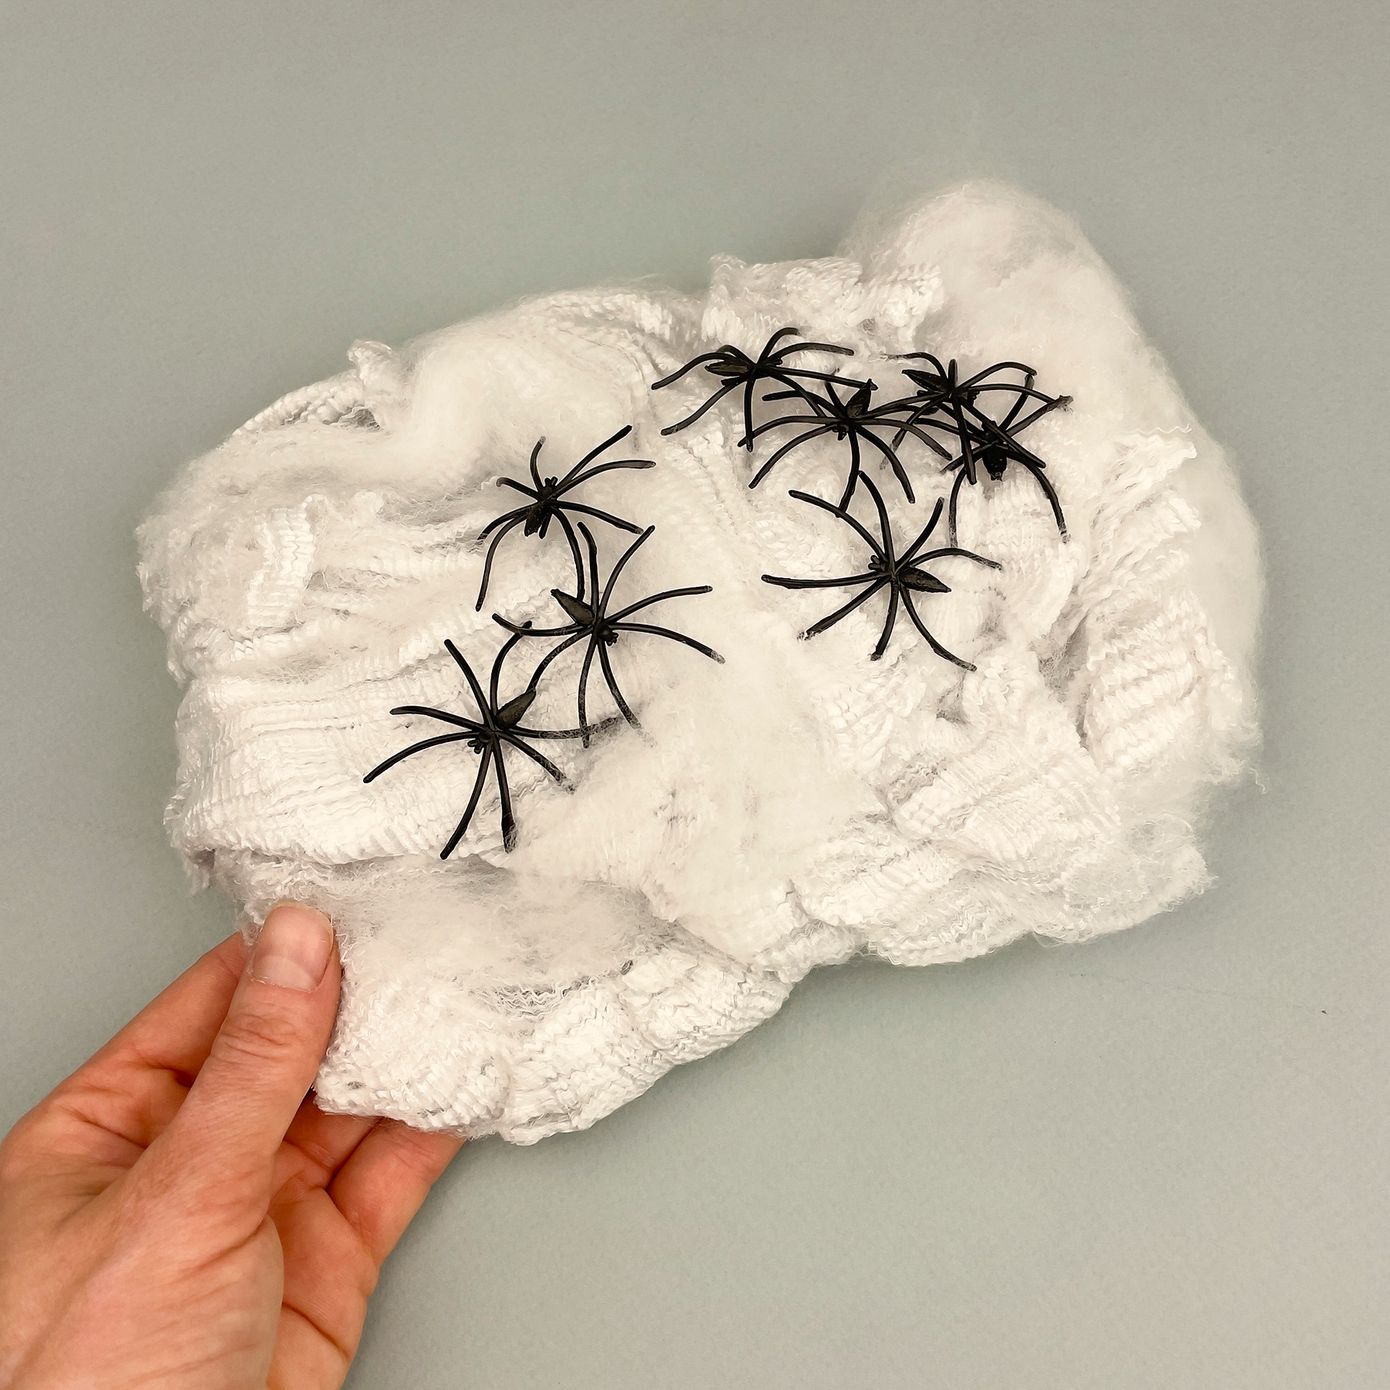 Біла павутина для декору на Хелловін, пакунок 86 г